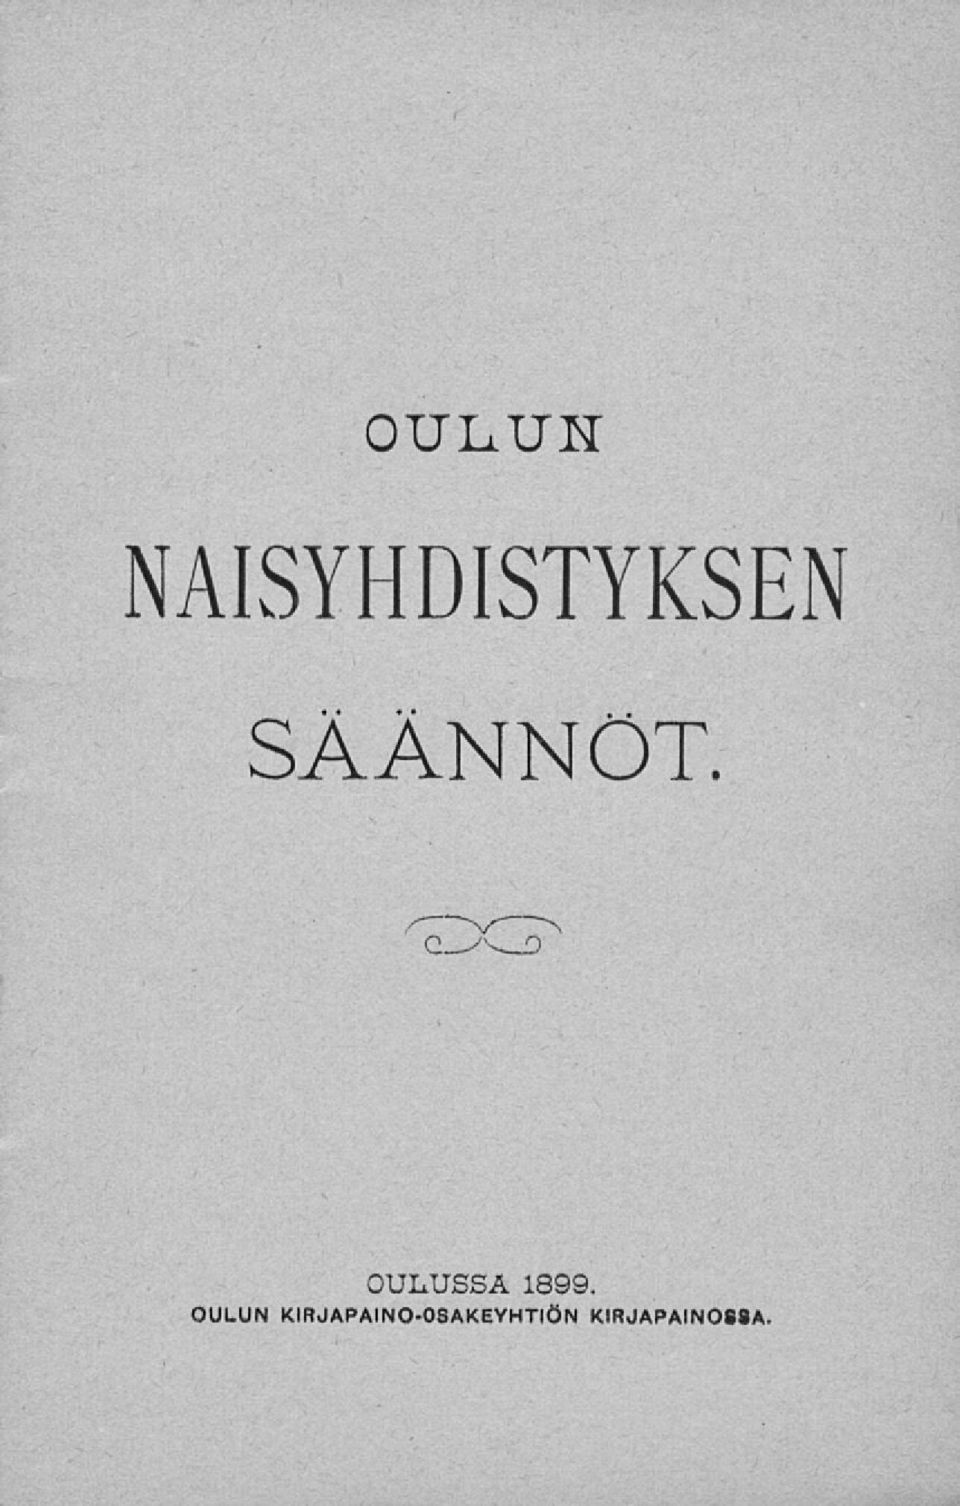 C_->v_o OULUSSA 1899.